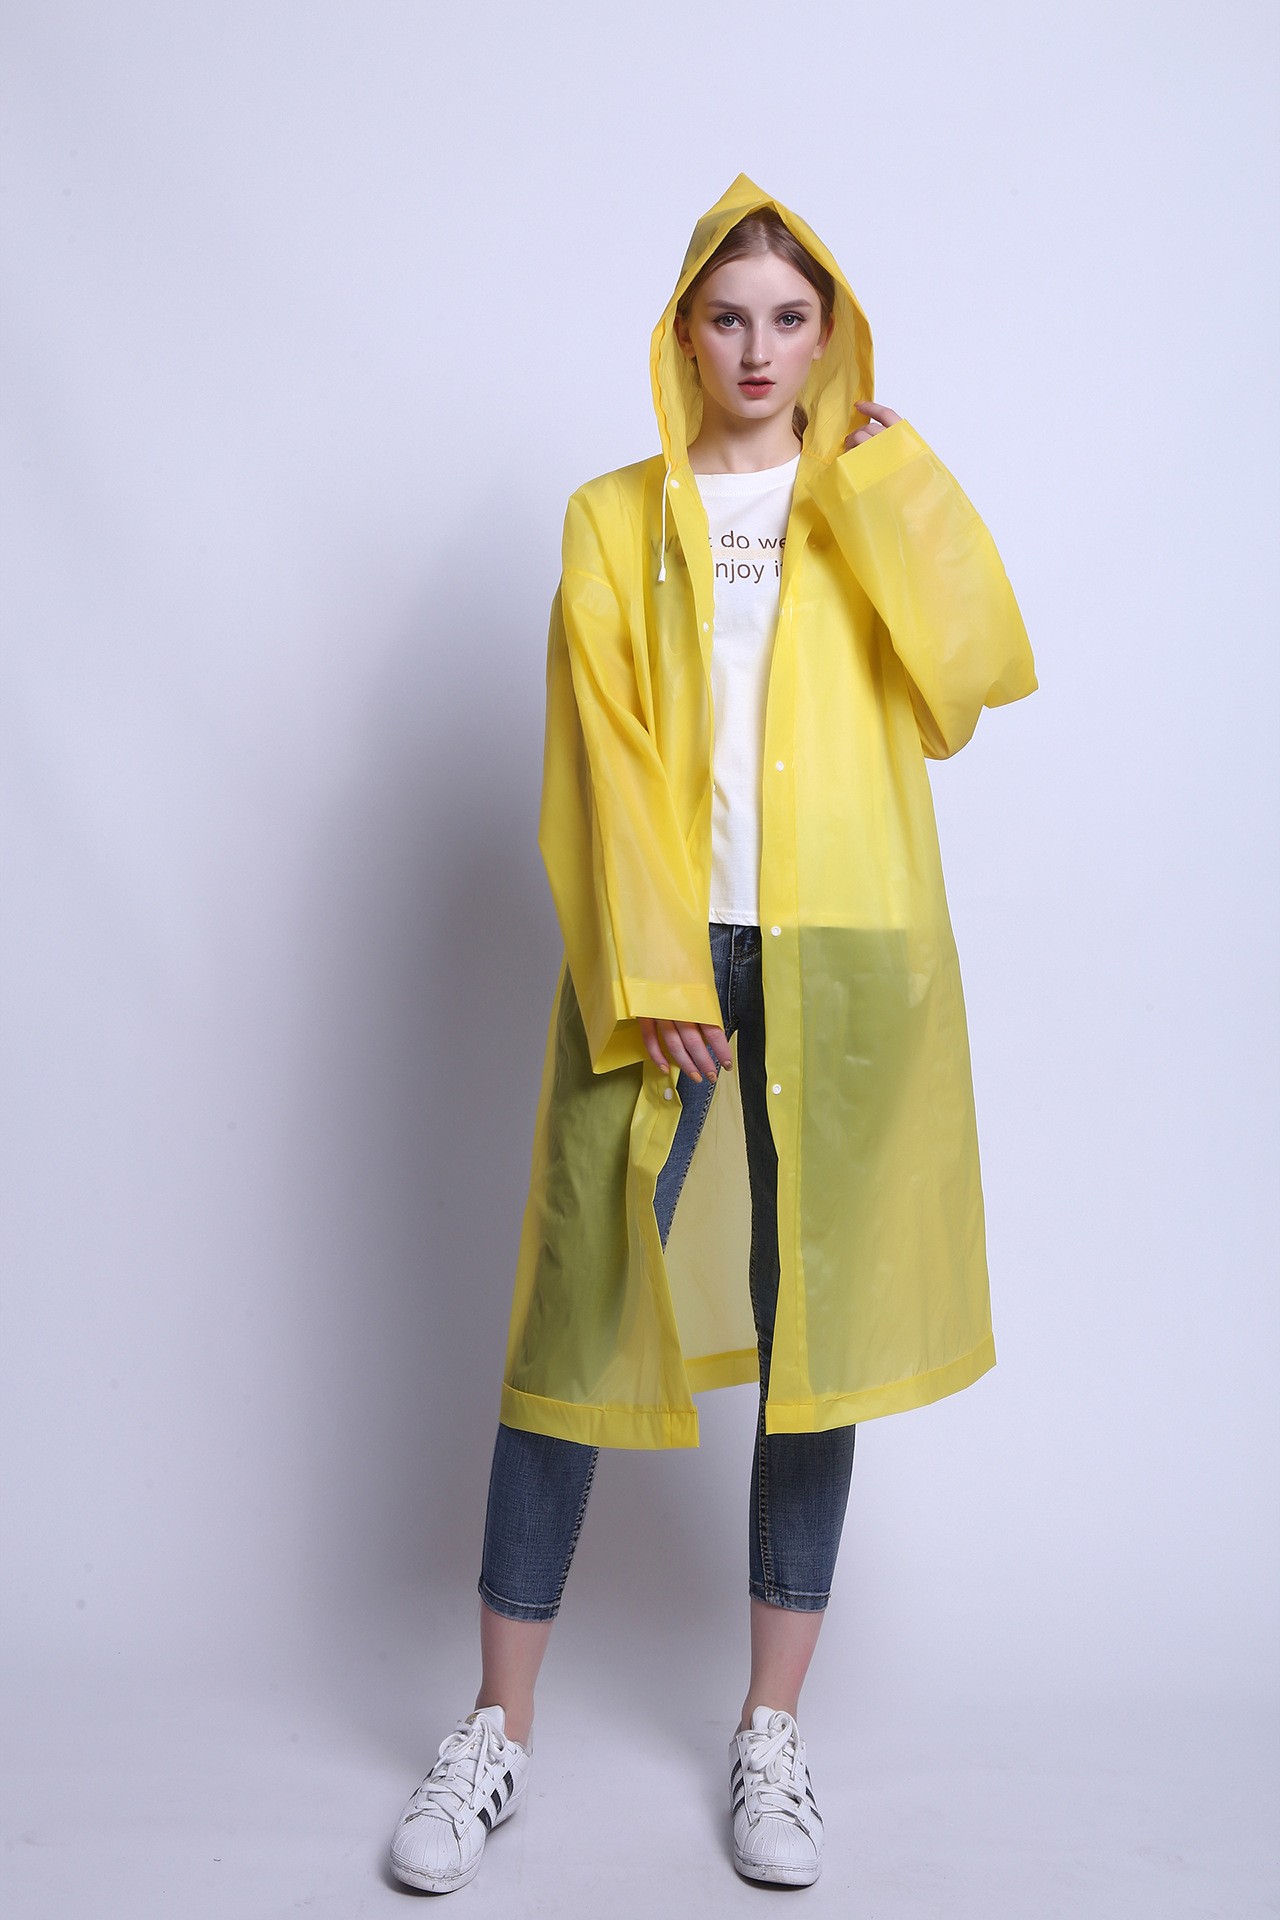 เสื้อคลุมกันฝนน้ำหนักเบา EVA Rain Coat แบบ Free Size ขนาด 65 x 115 cm — สี่เหลือง